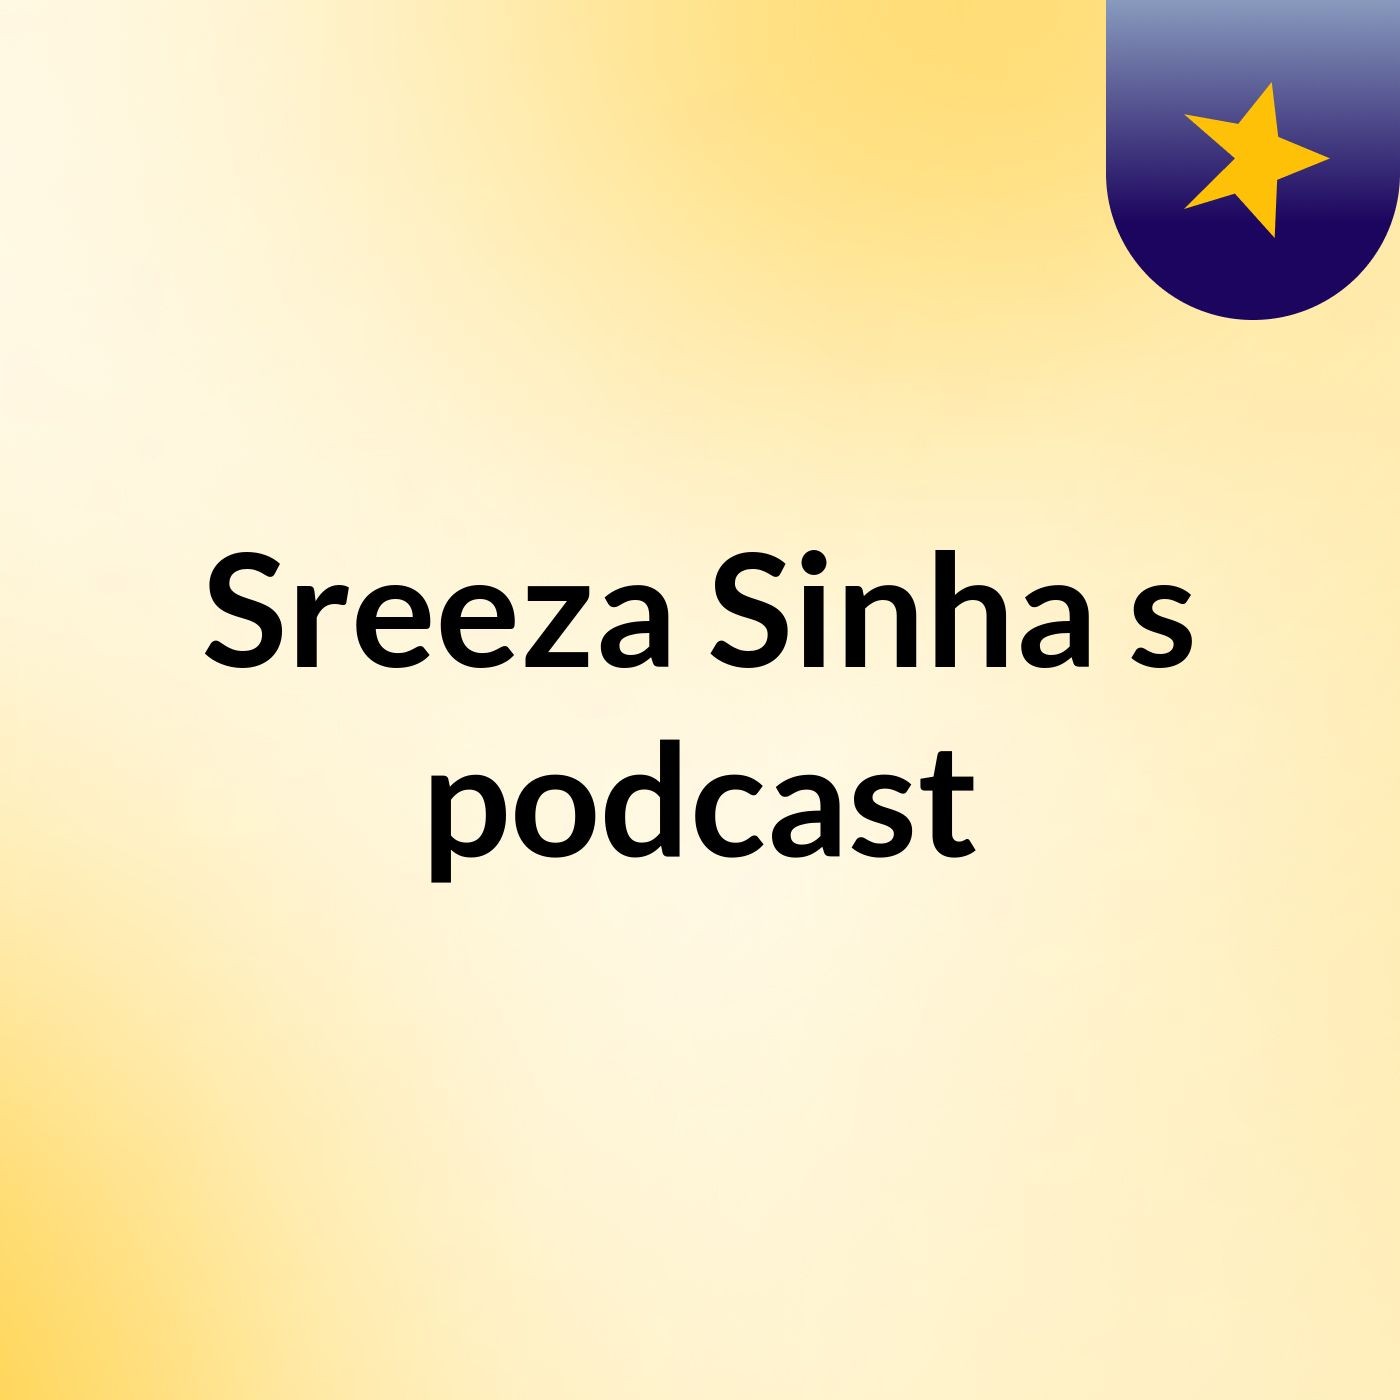 Sreeza Sinha's podcast